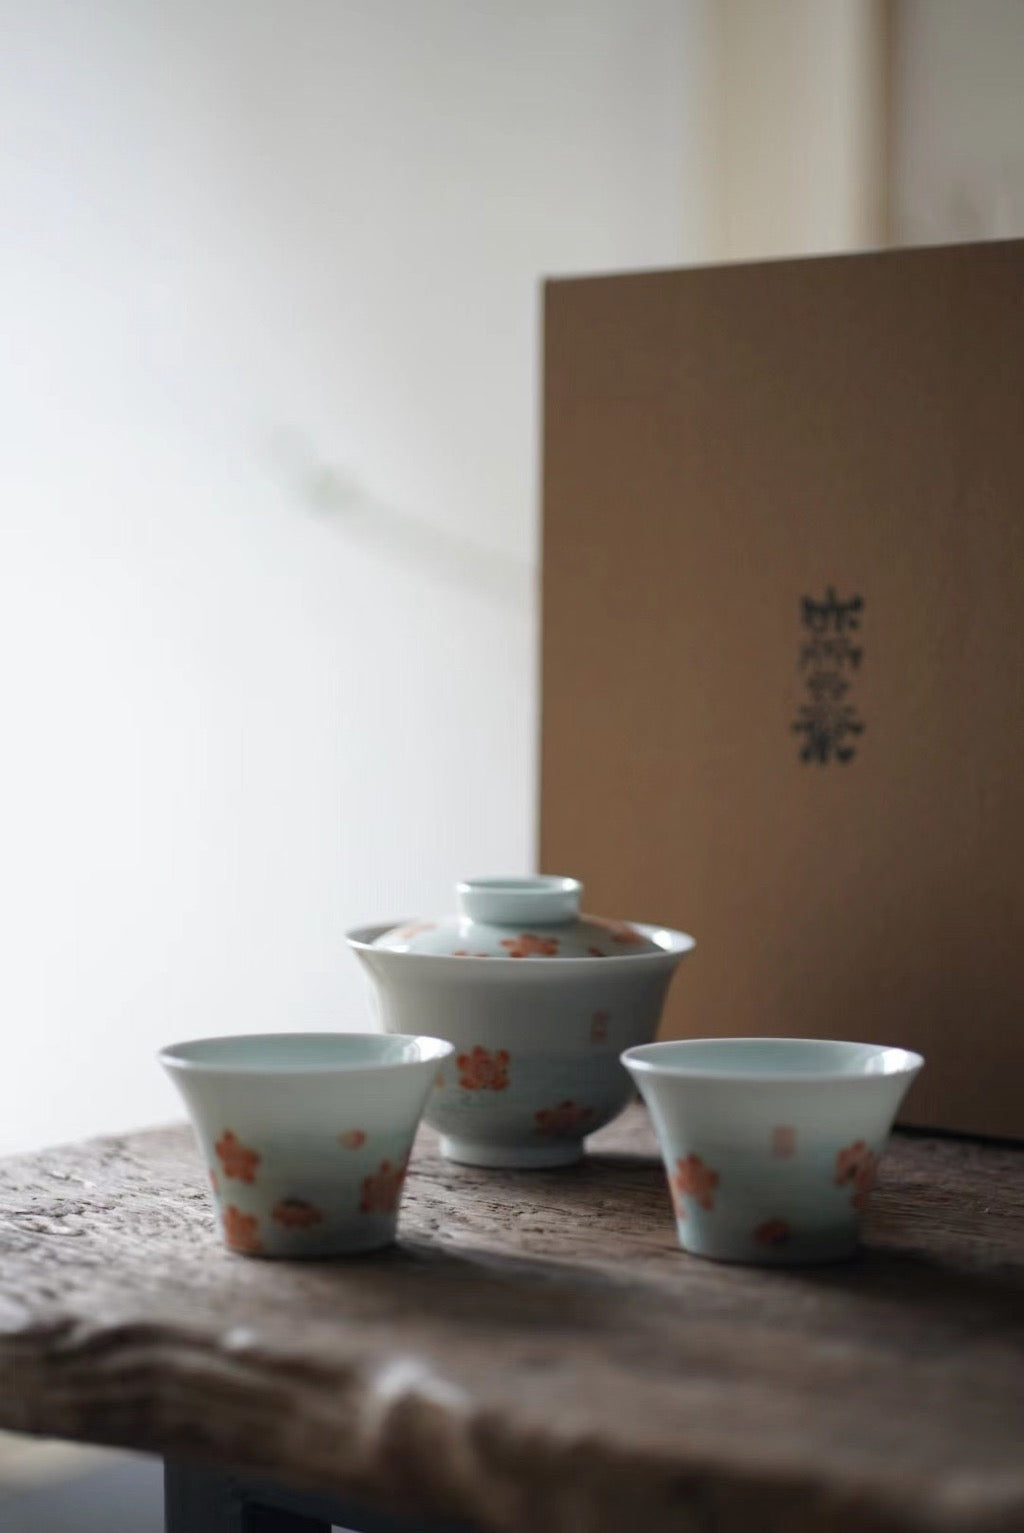 Vintage Chinese Hand-painted Flower Gongfu Gaiwan Teaset|Best Ceramics